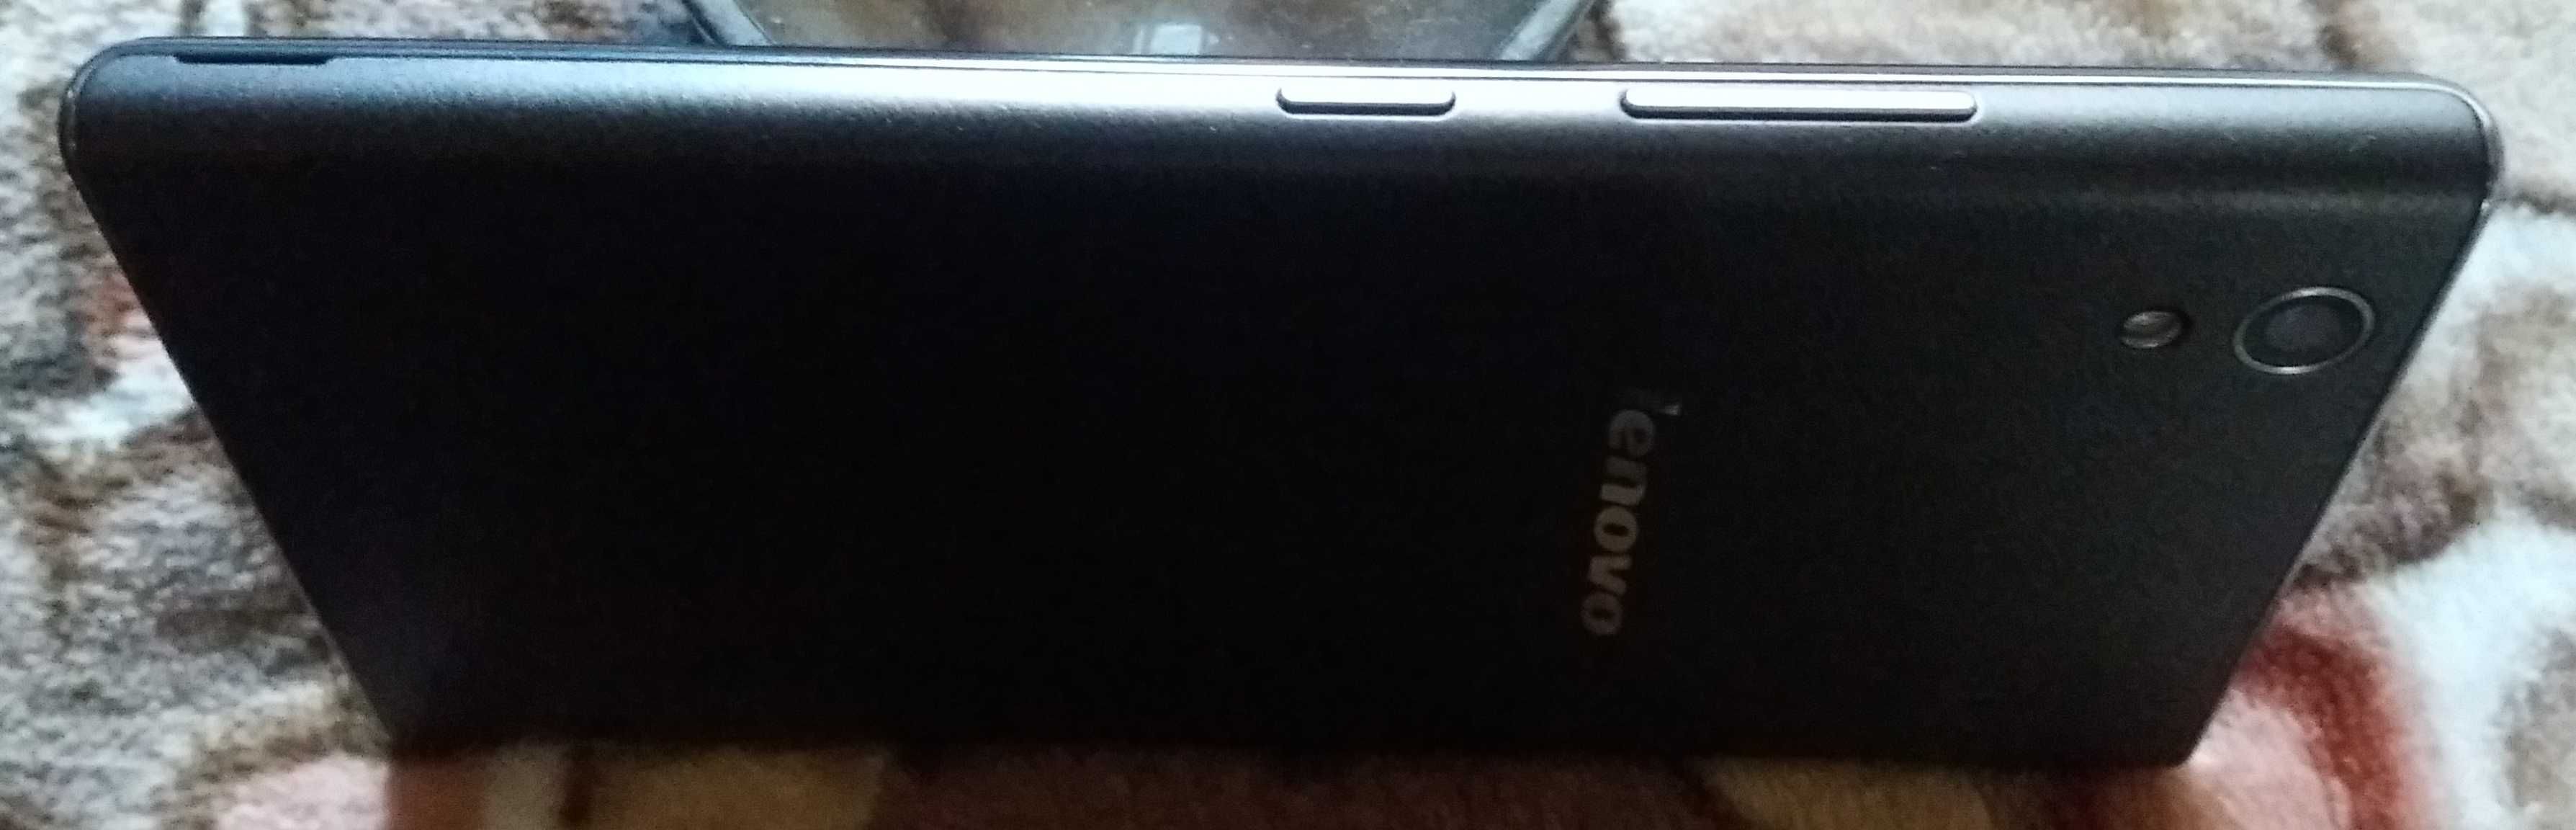 Смартфон Lenovo P70, InFocus M2